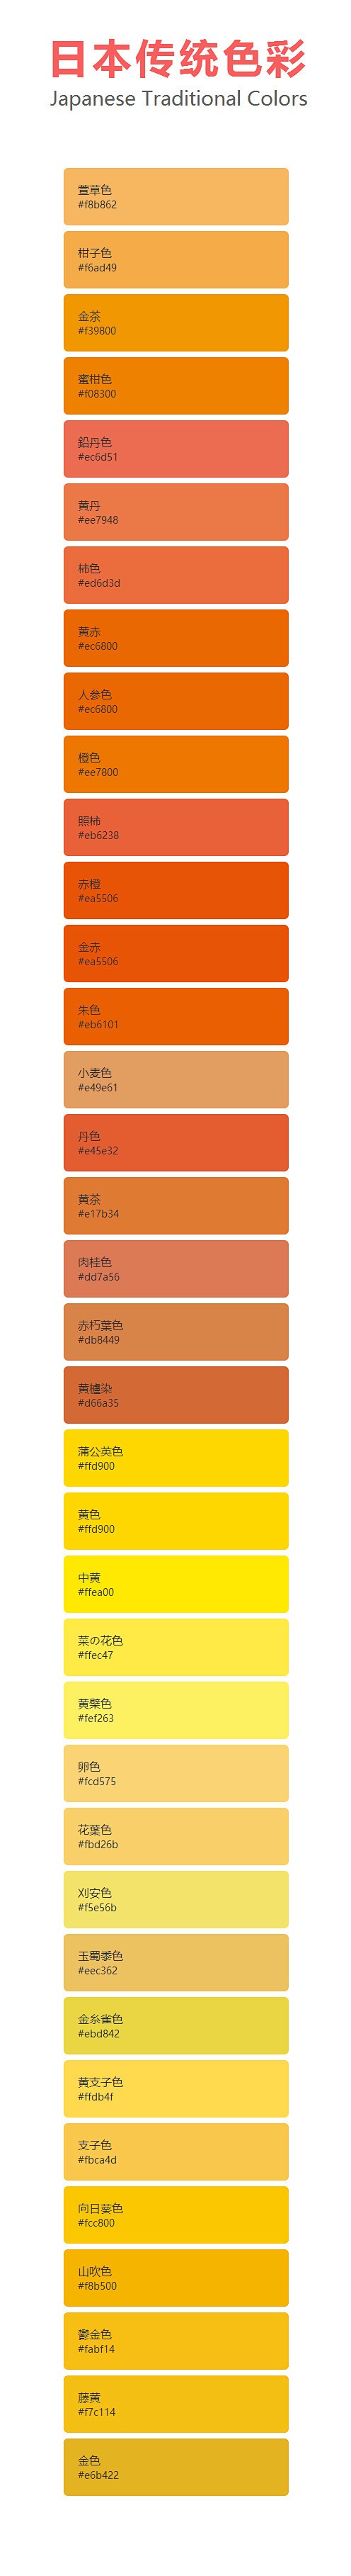 日本传统色彩03